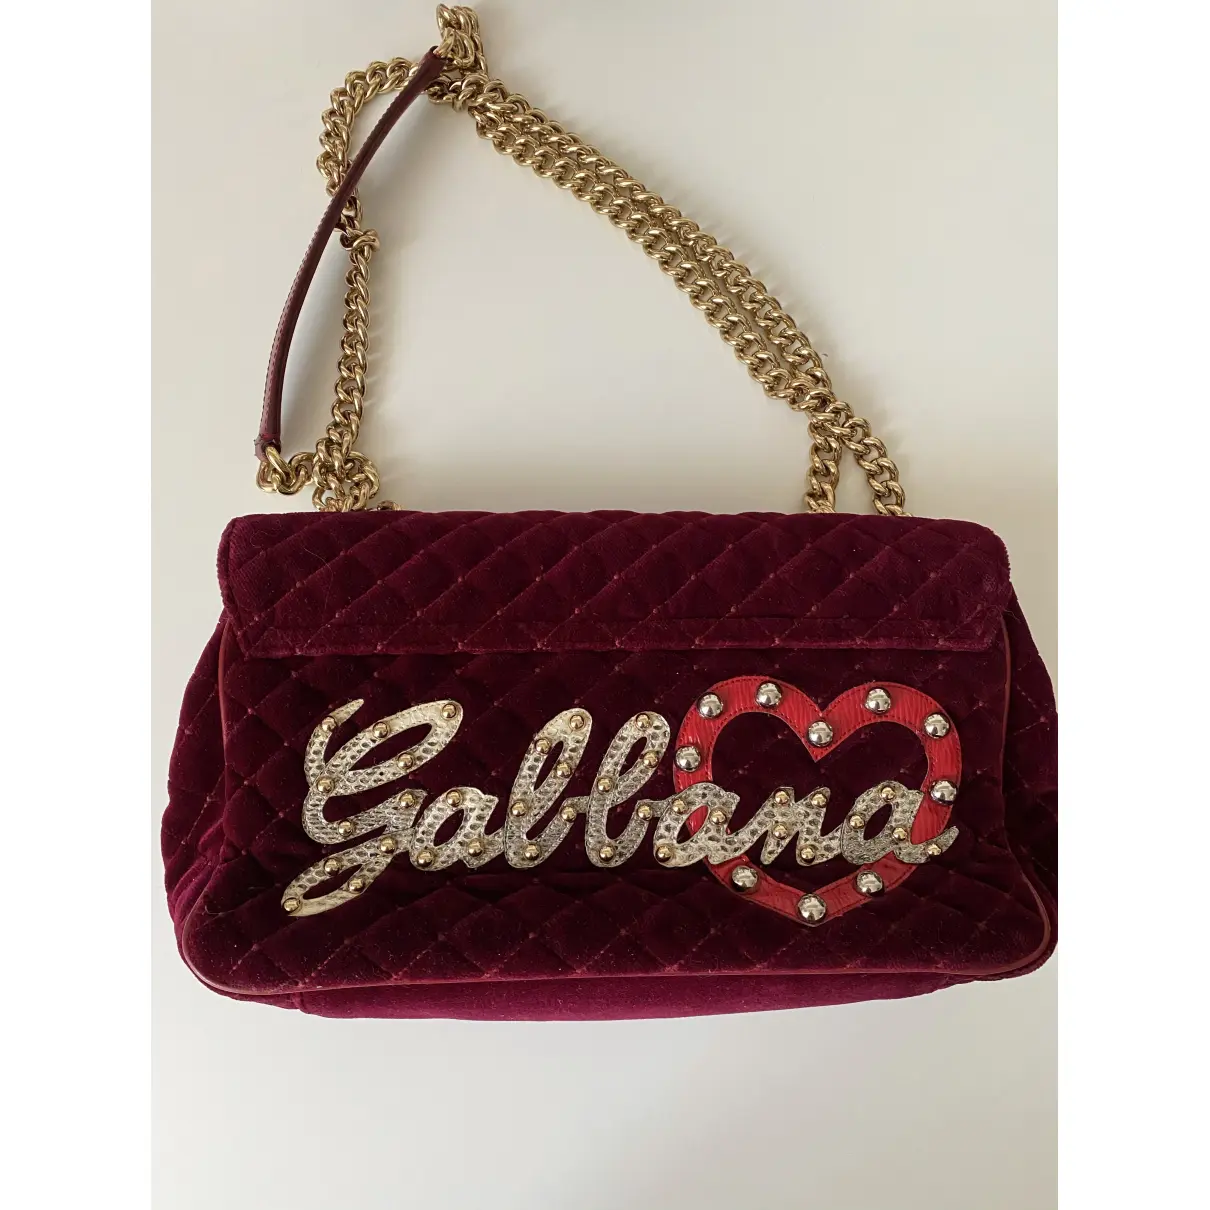 Buy Dolce & Gabbana Lucia velvet handbag online